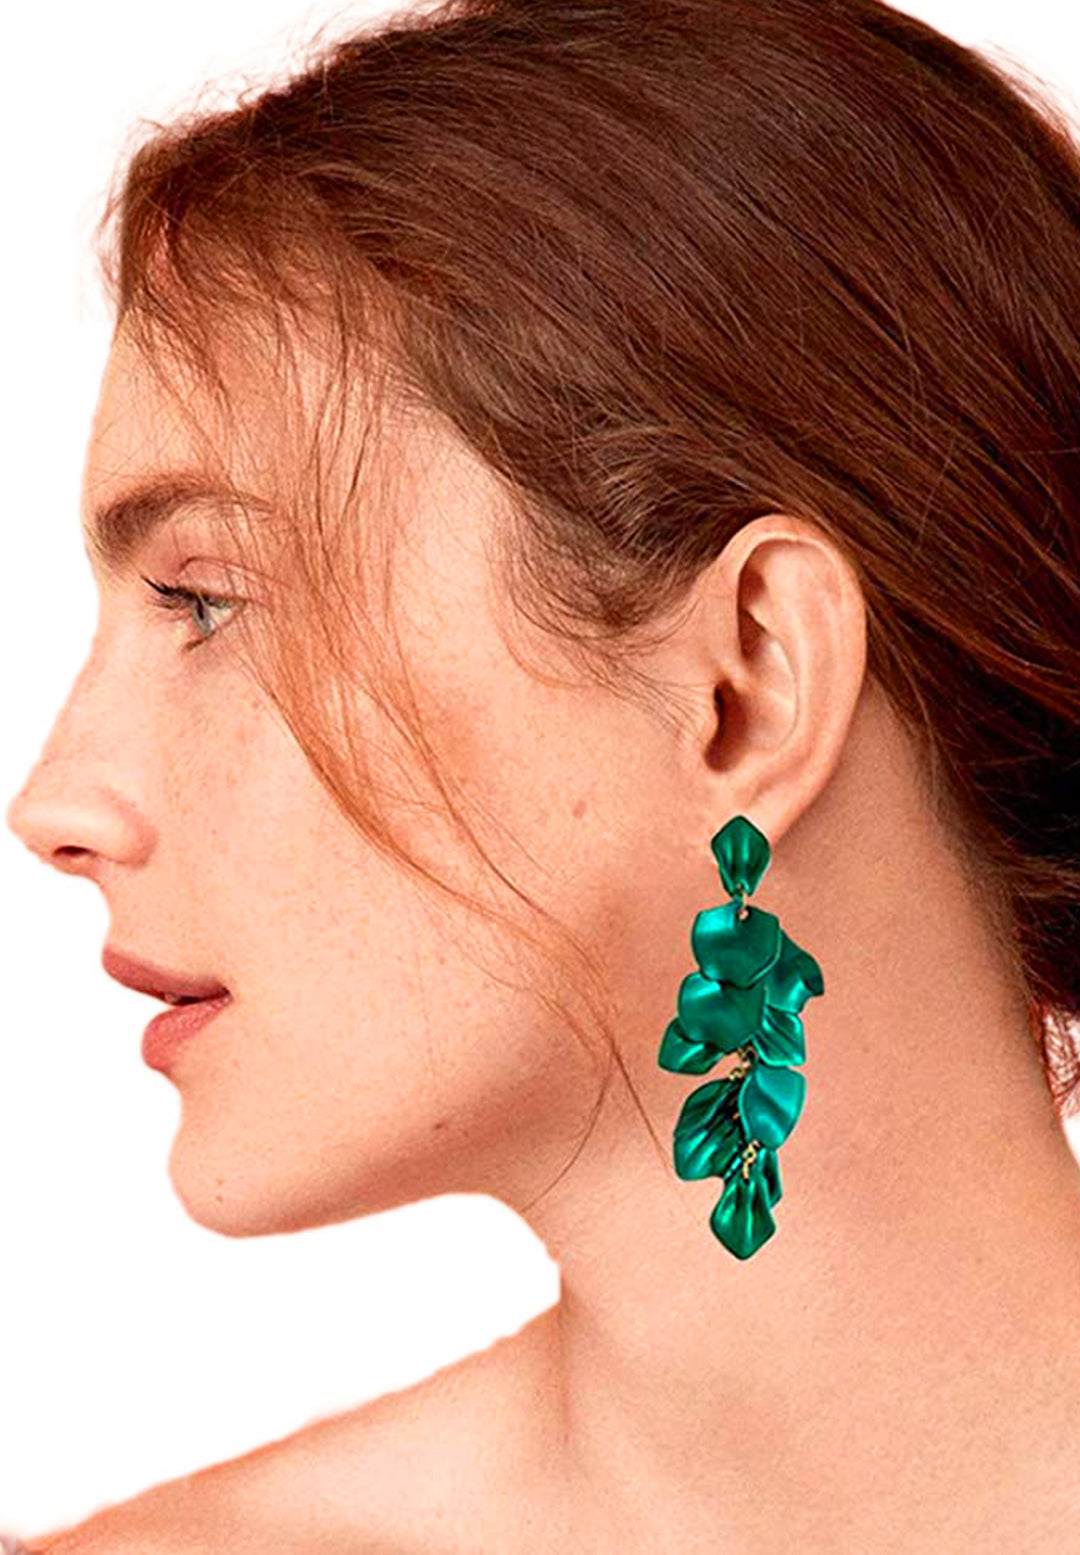 Avant-Garde Paris Luxury Statement Petals Shape Long Earrings